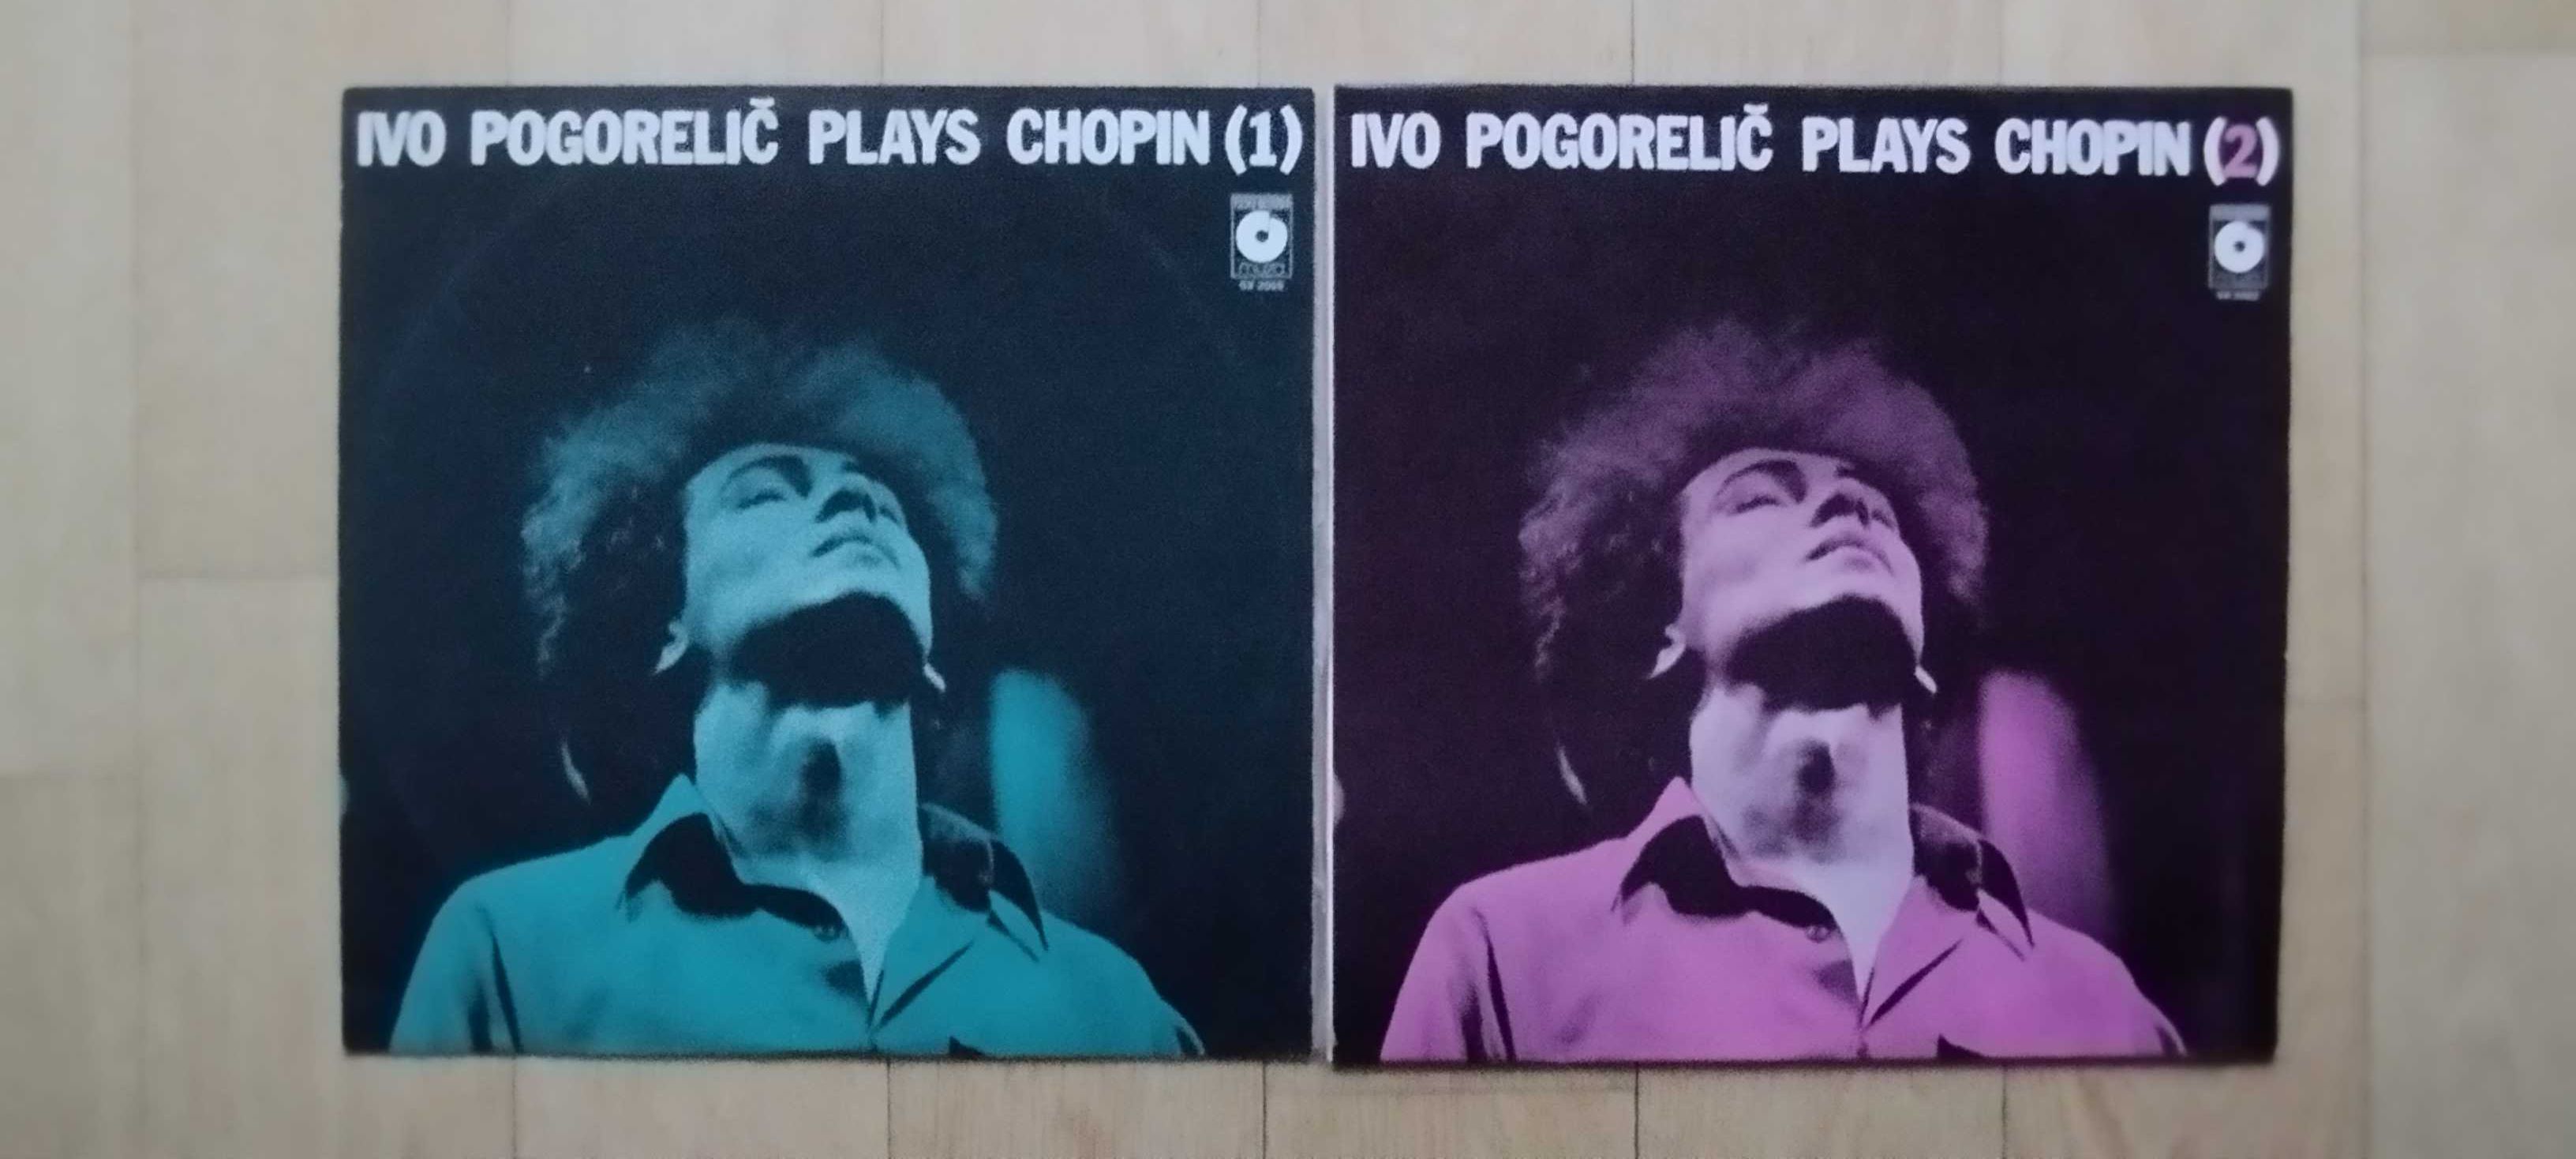 Ivo Pogorelic plays Chopin 2 płyty winylowe 1980 rok